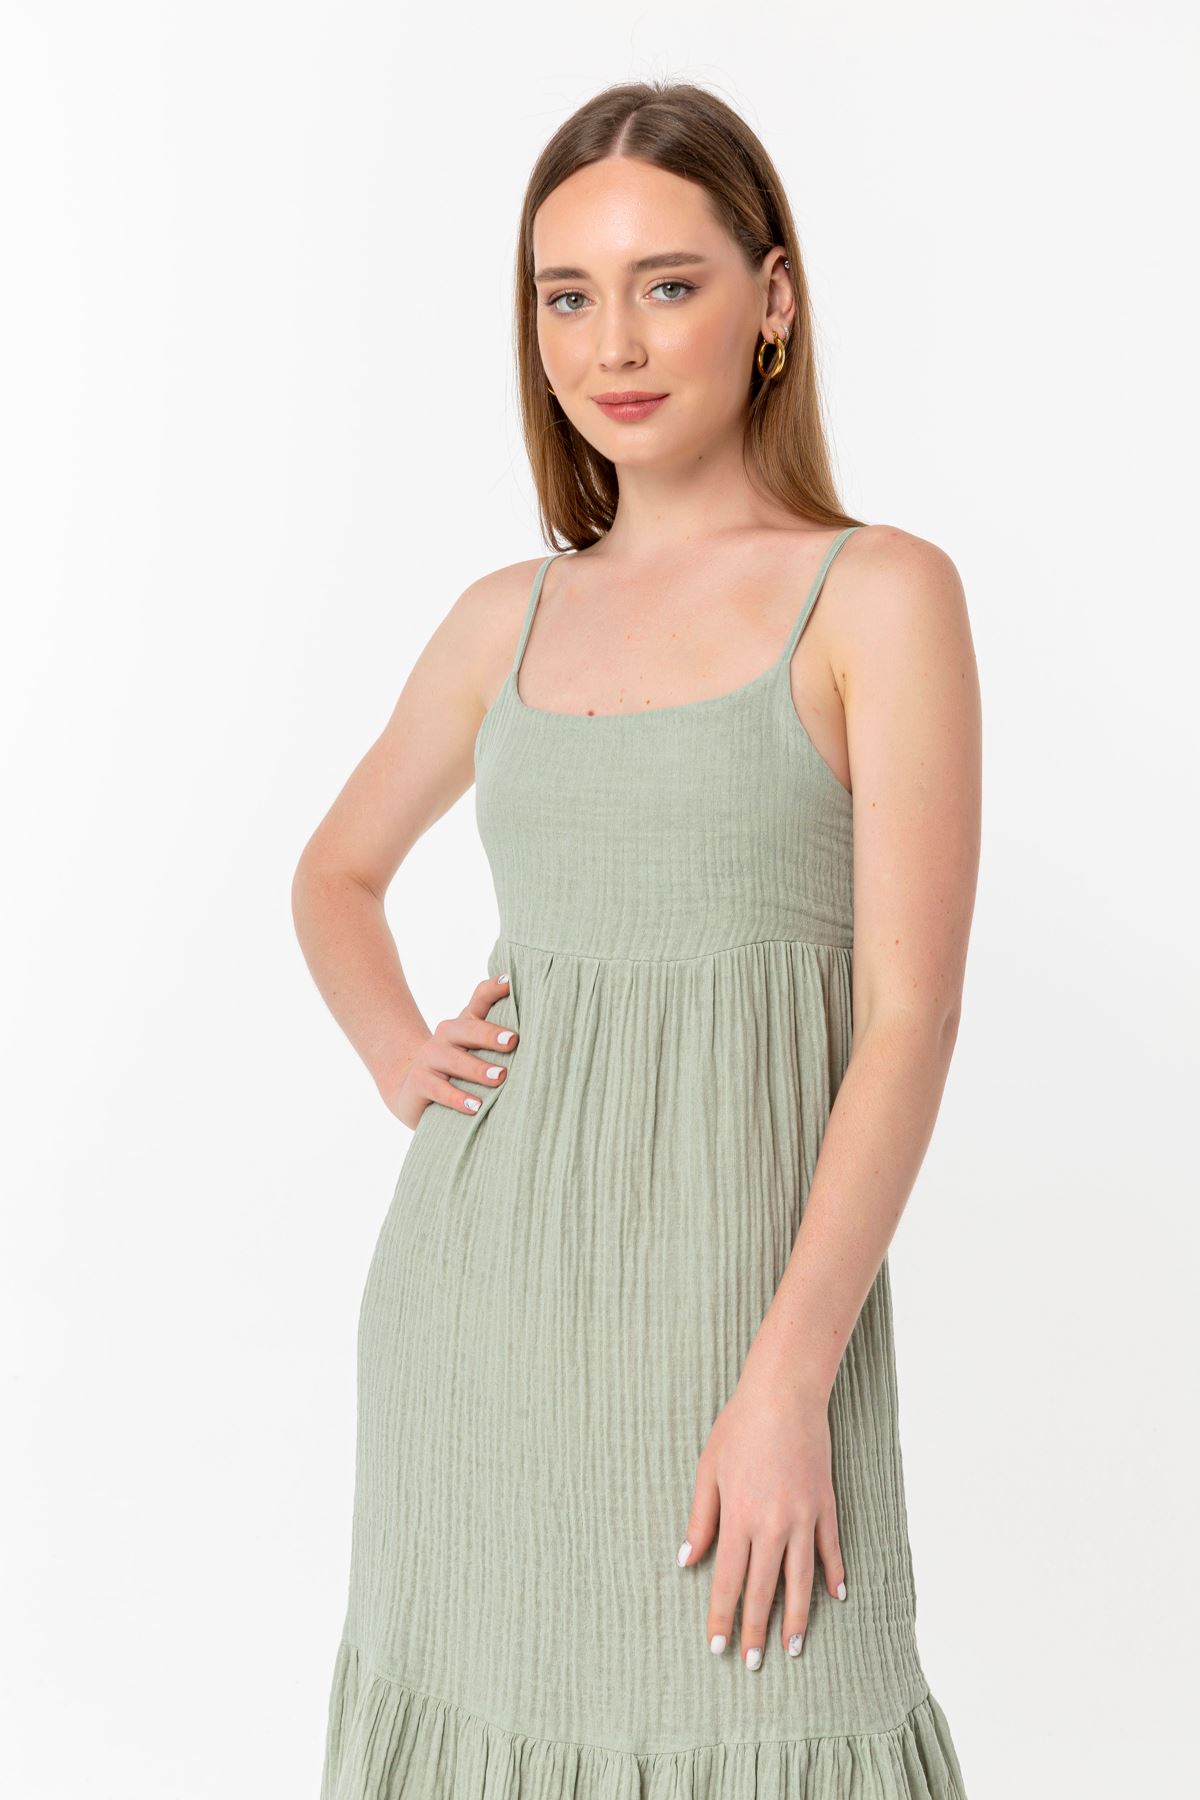 Müslin Kumaş İp Askılı Uzun Boy Rahat Kalıp Kadın Elbise-Mint